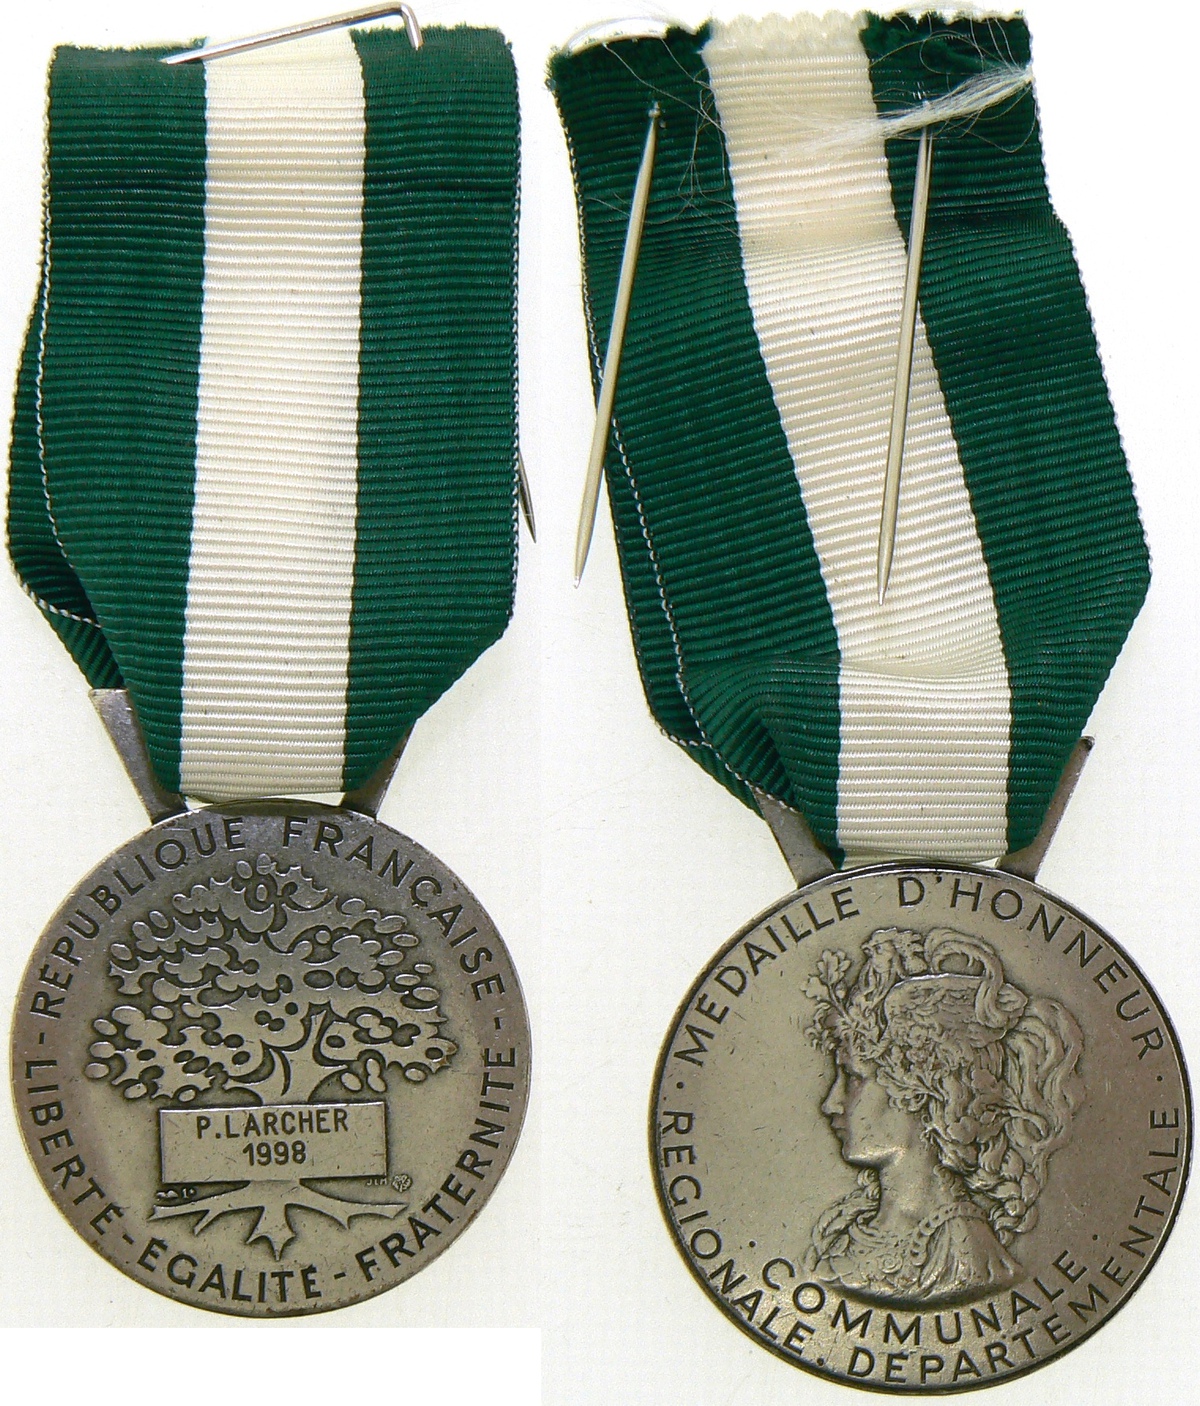 Regional, Departamental and Communal Honor Medal - Image 2 of 2